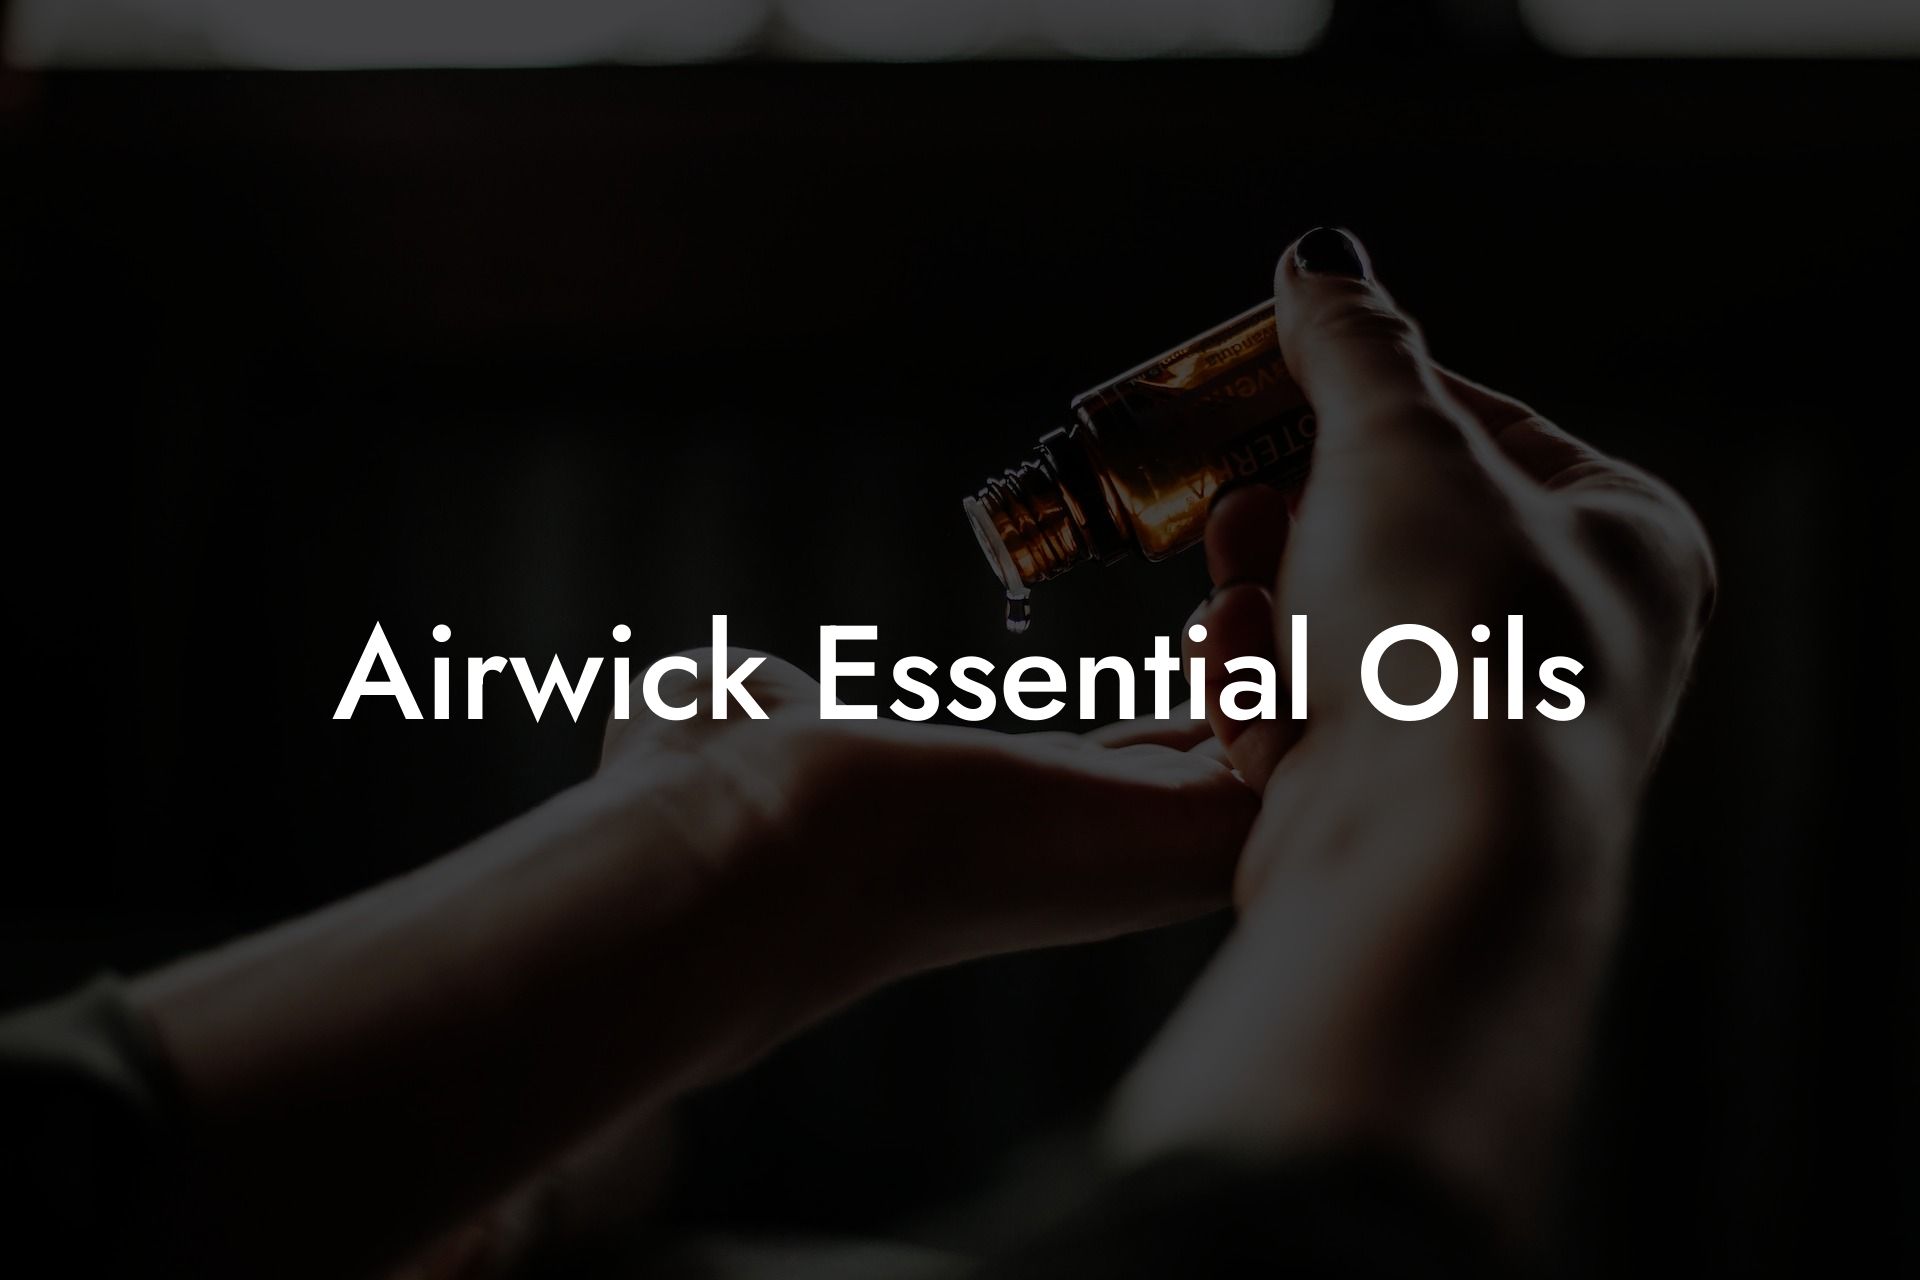 Airwick Essential Oils